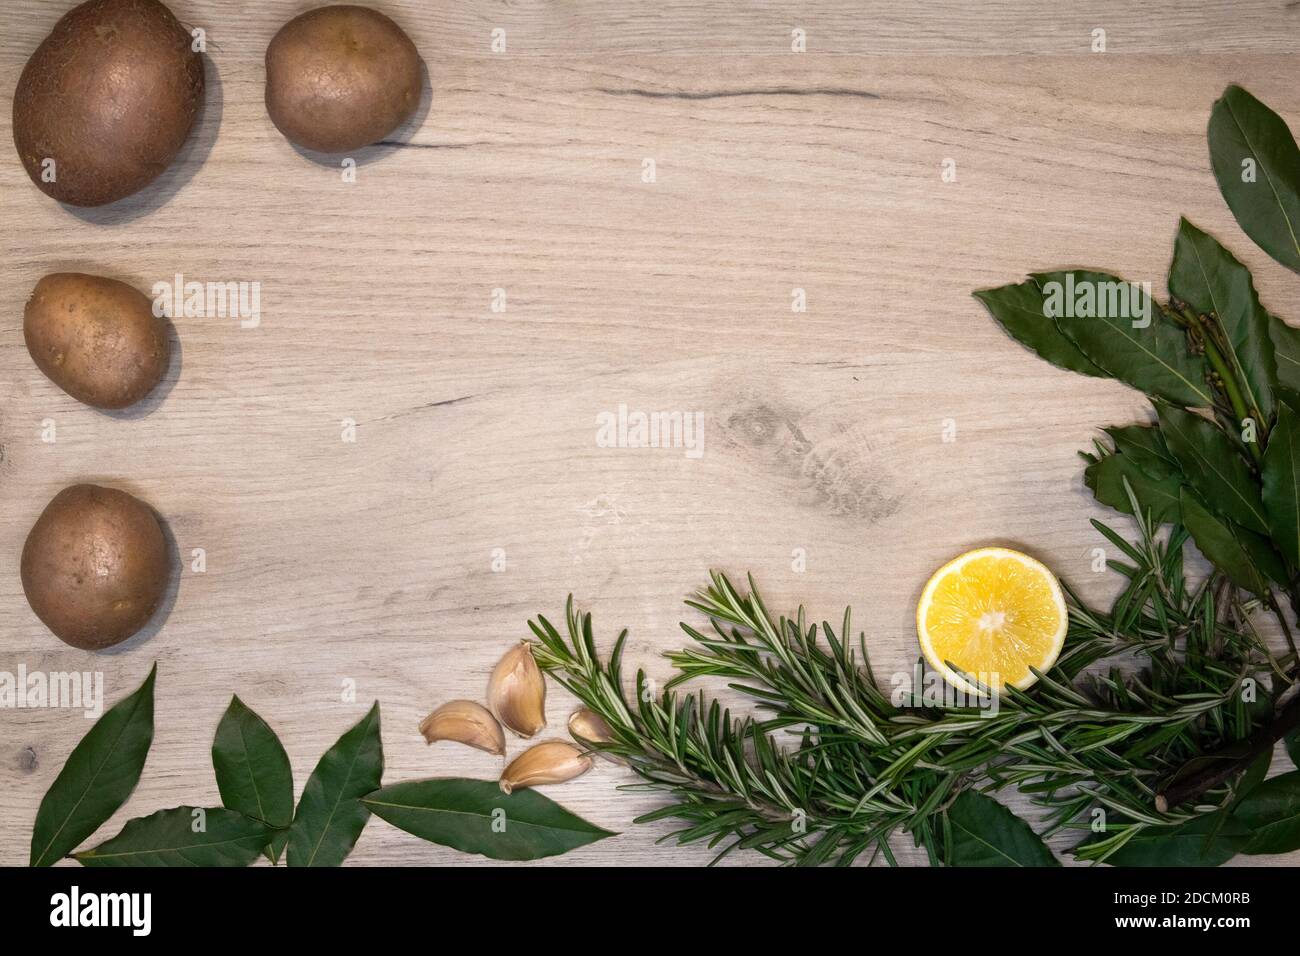 Panneau en bois clair encadré de branches de romarin frais, feuilles de Laurier, demi-citron, gousses d'ail et peu de pommes de terre crues, modèle de conception Banque D'Images